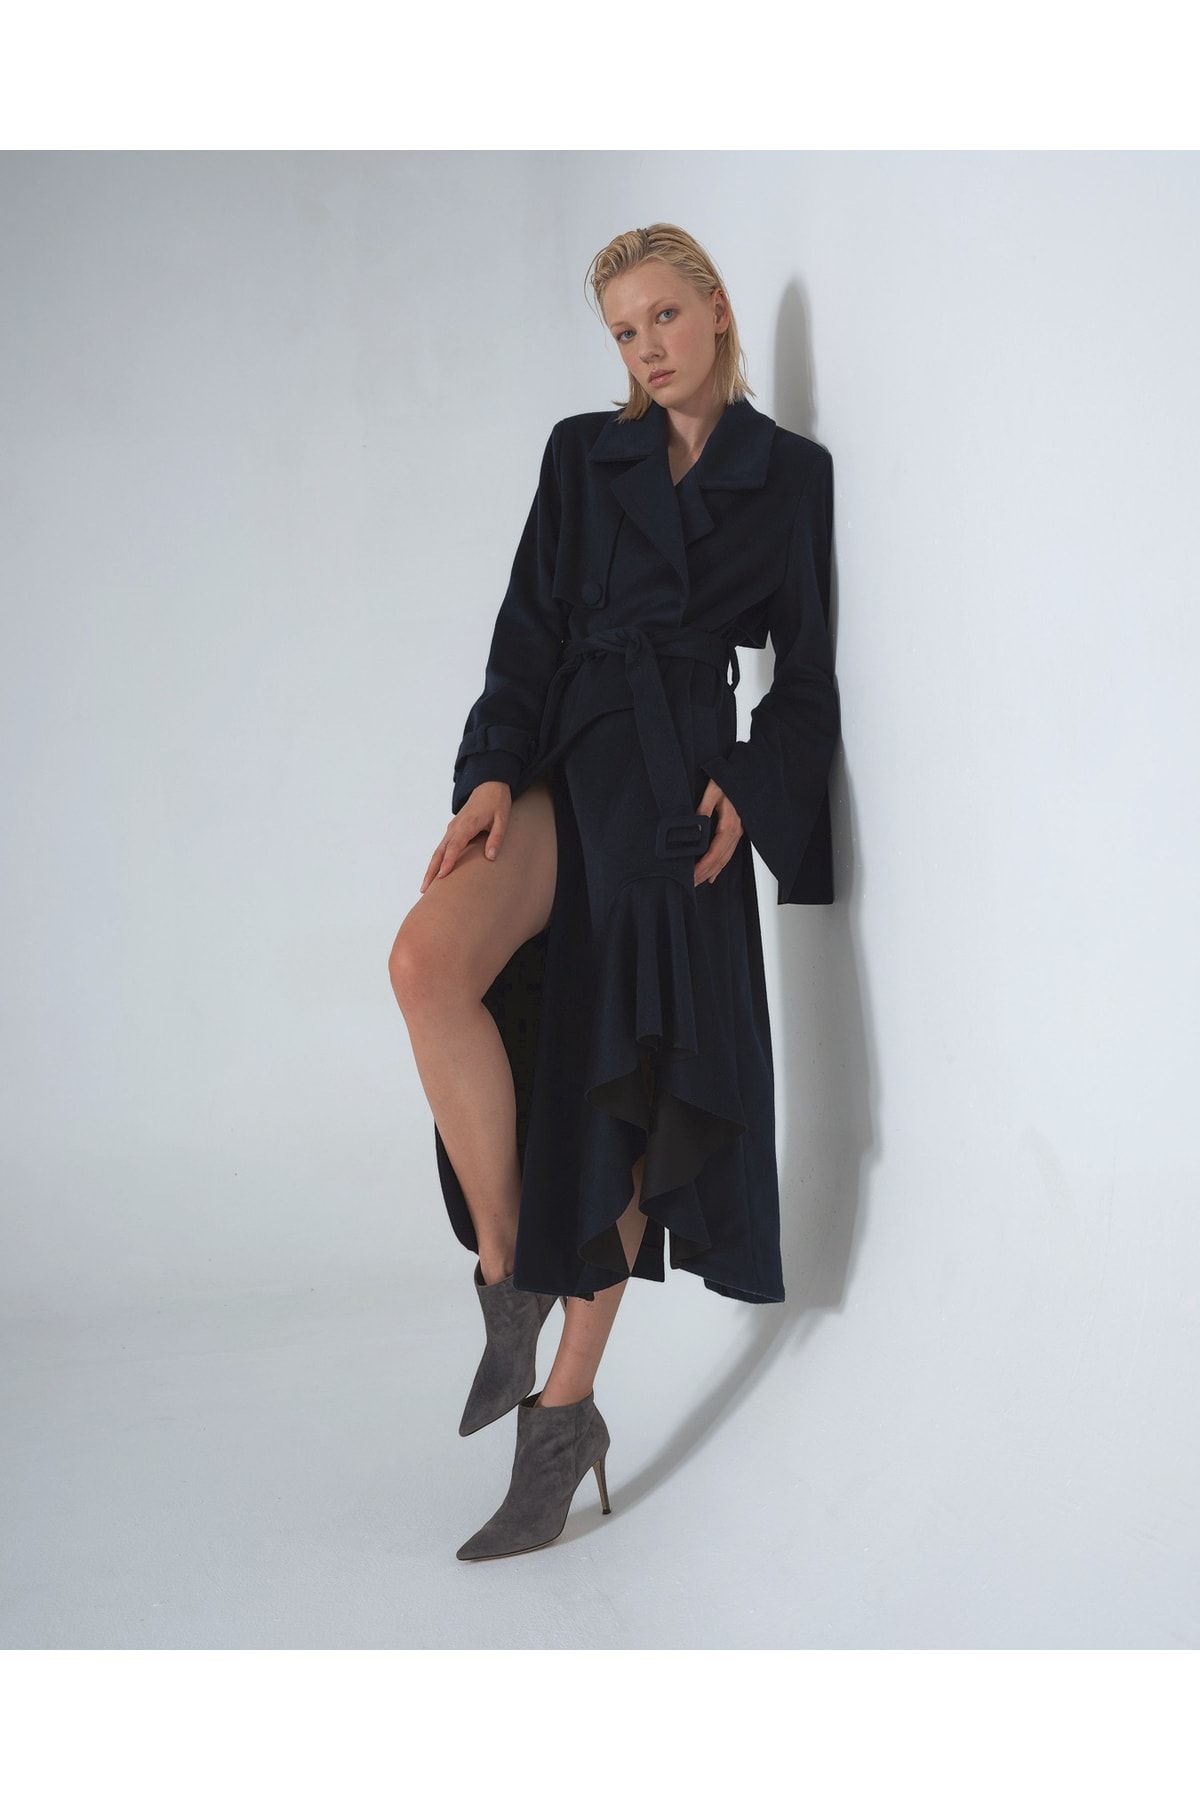 YOU YOUNG Kadın Fırfırlı Yırtmaçlı Elbise Palto Kol Ve Kemer Detaylı Lacivert Navy - Nathalie Kaban Palto